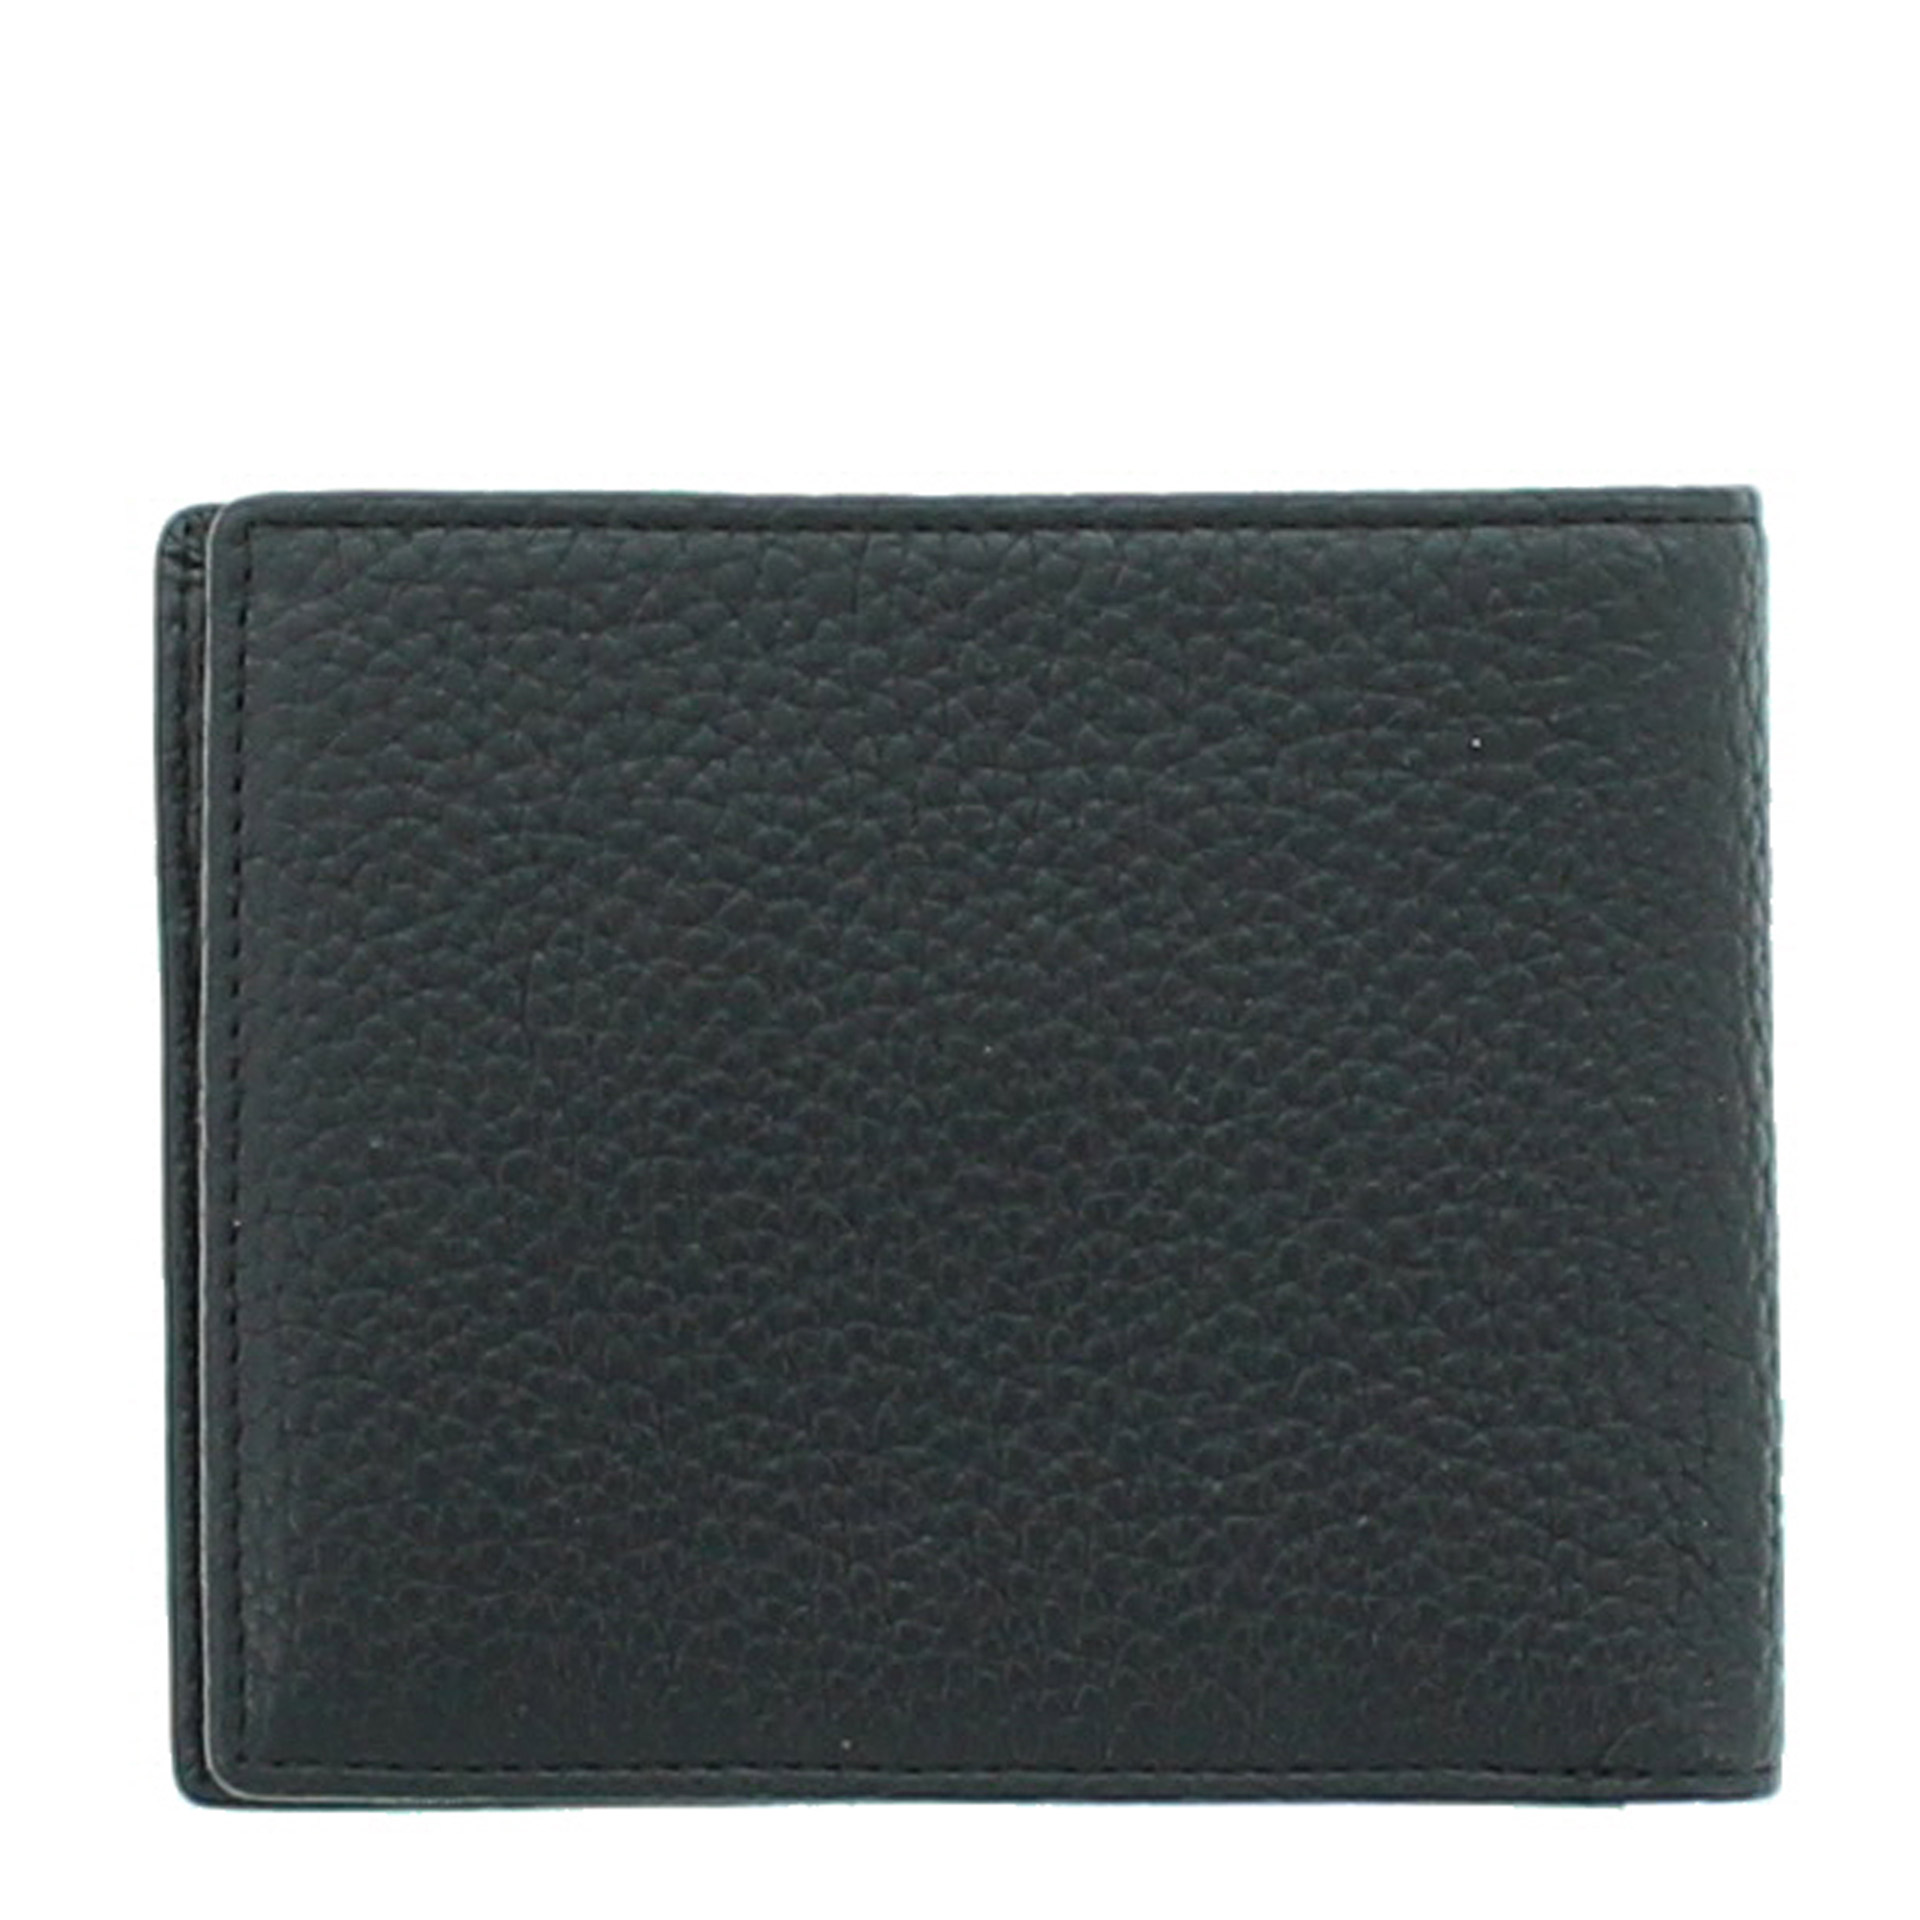 Braun Büffel Turin RFID Geldbörse 4CS schwarz